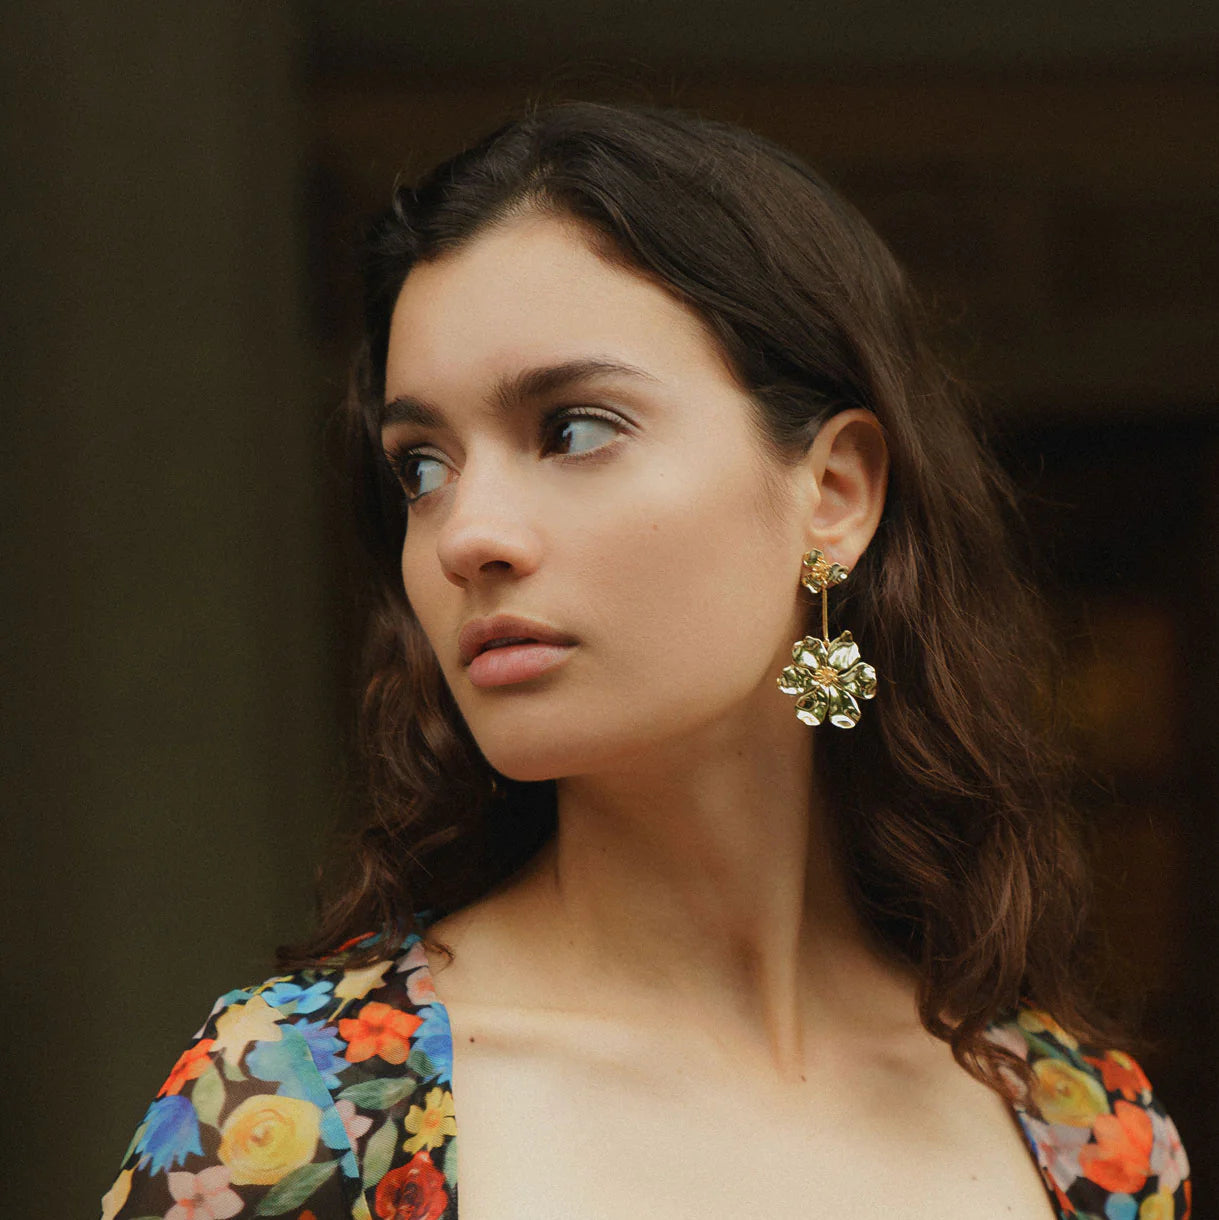 Lux Elodie Earrings, Gold